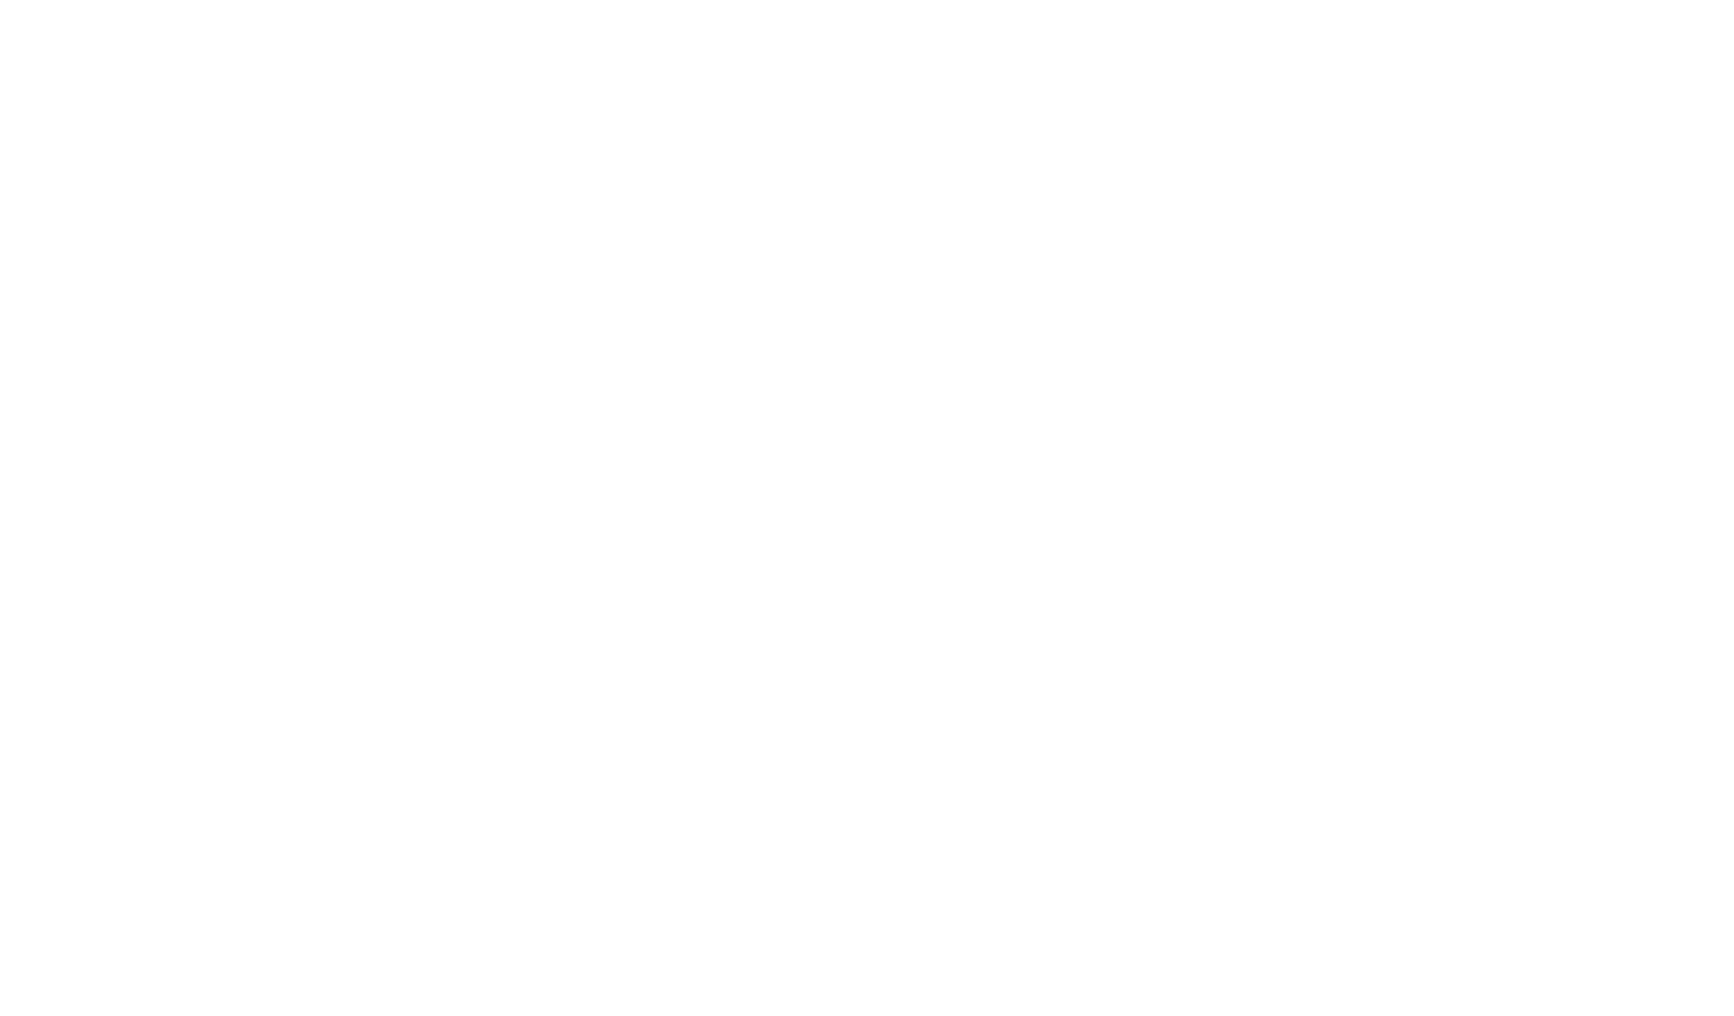 Erexit Group AB